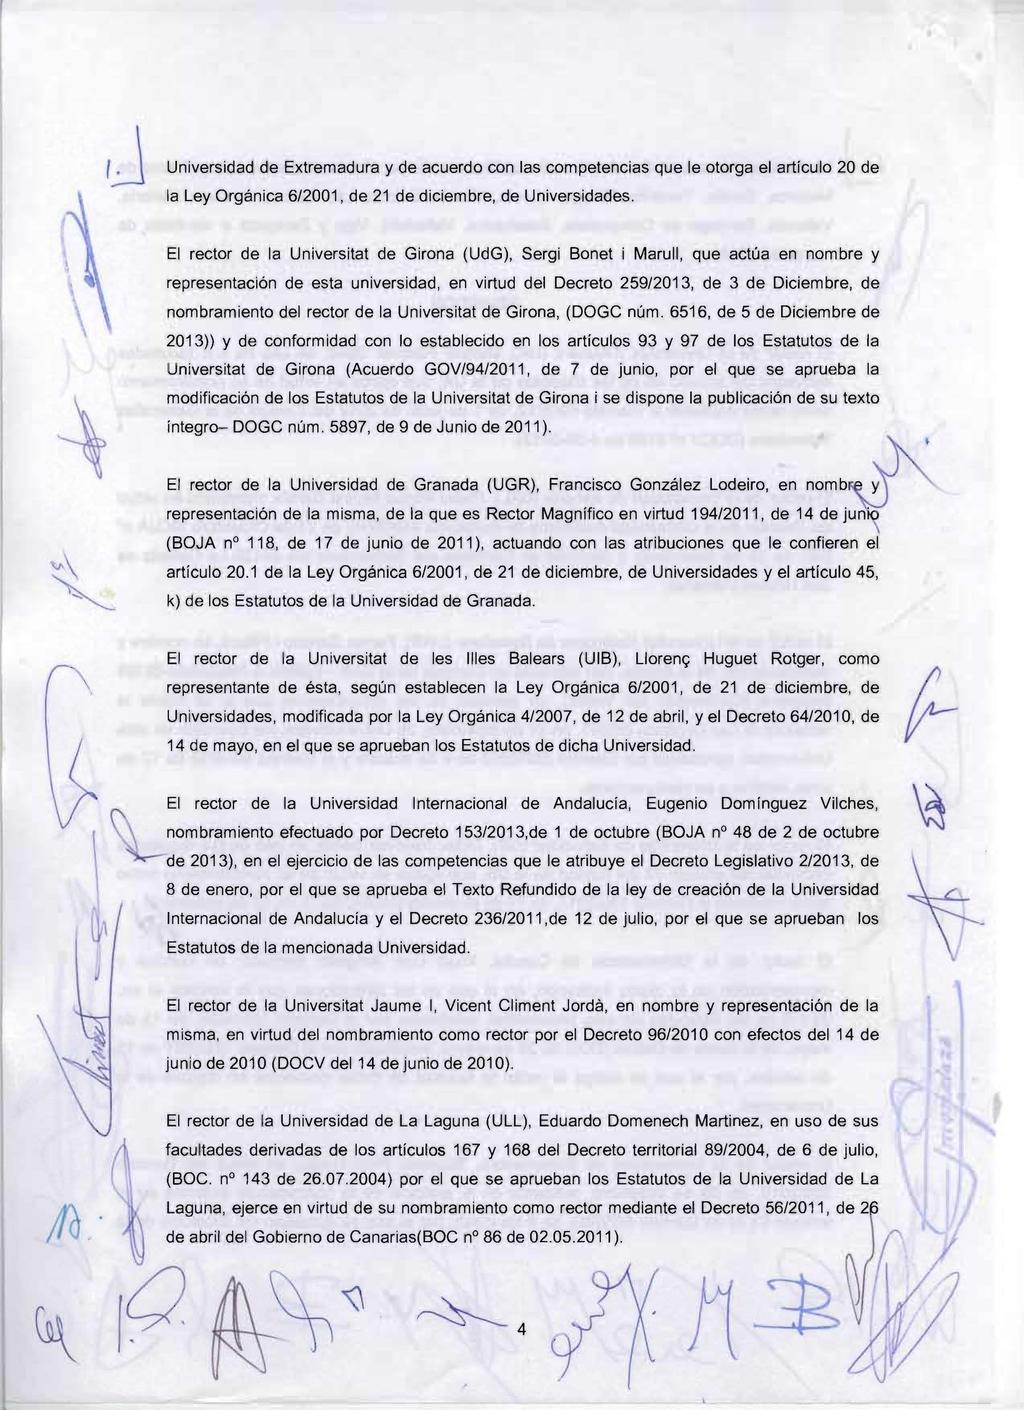 Universidad de Extremadura y de acuerdo con las competencias que le otorga el artículo 20 de la Ley Orgánica 6/2001, de 21 de diciembre, de Universidades.